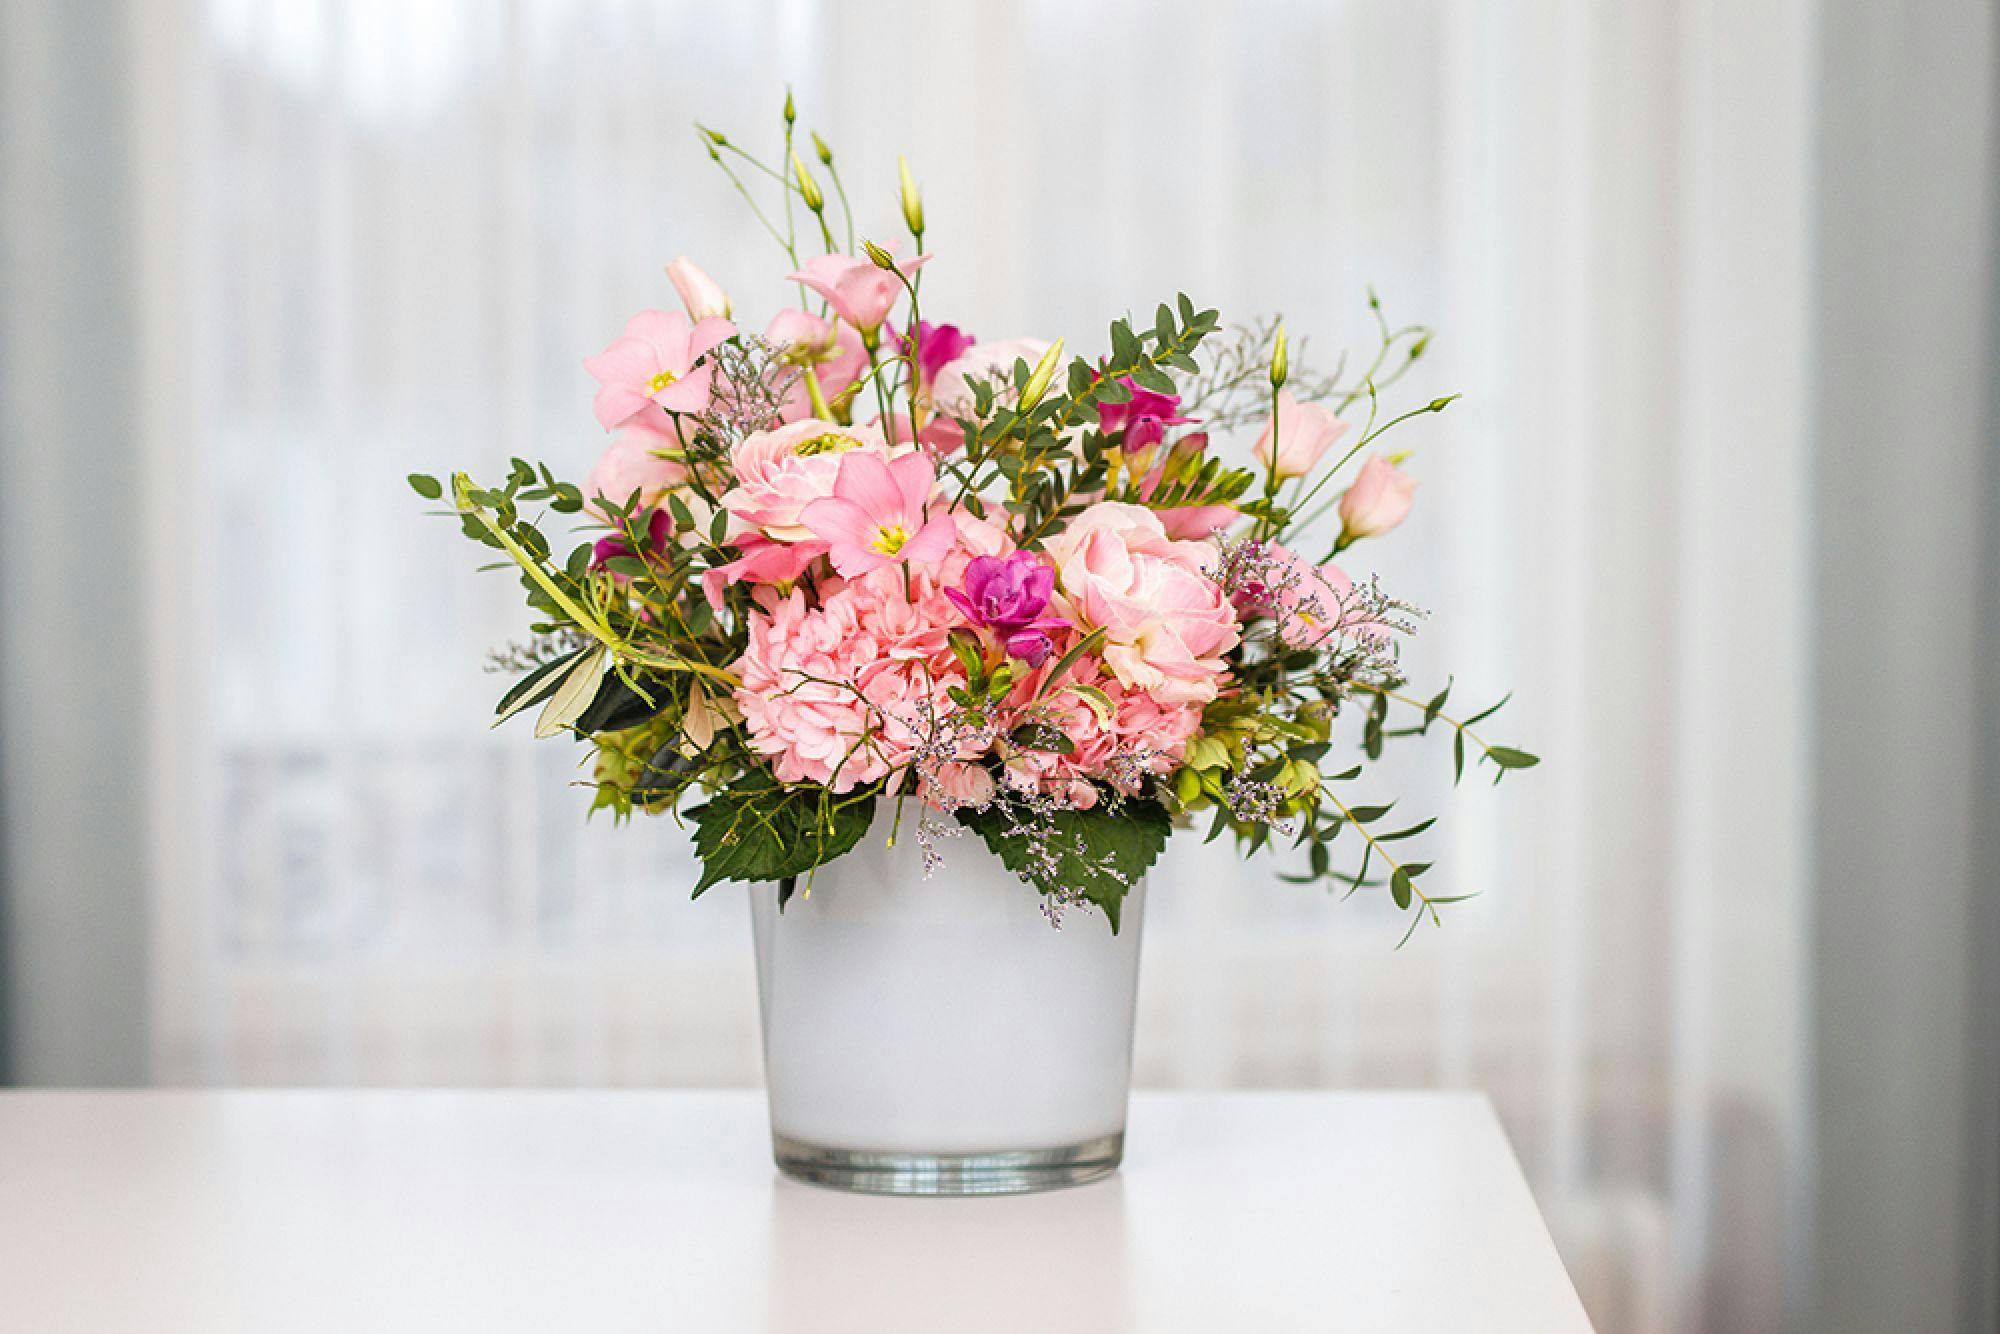 Farbenfroher Blumenstrauß aus rosa Blüten in einer Vase, vor einem hellen Hintergrund.